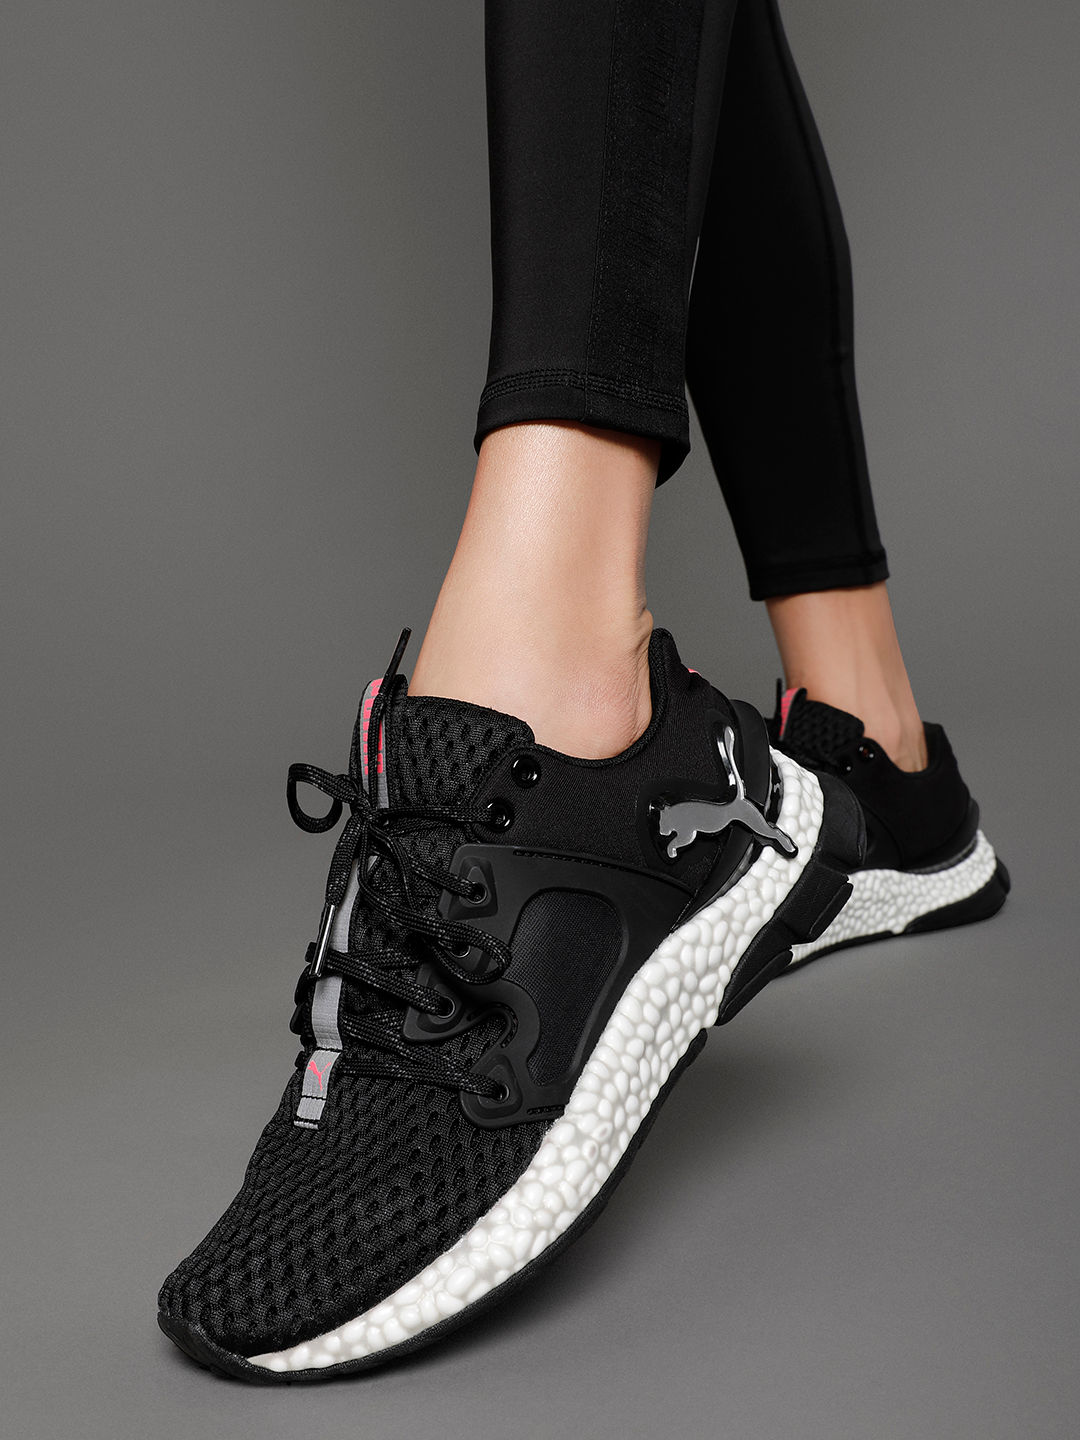 women running shoes online